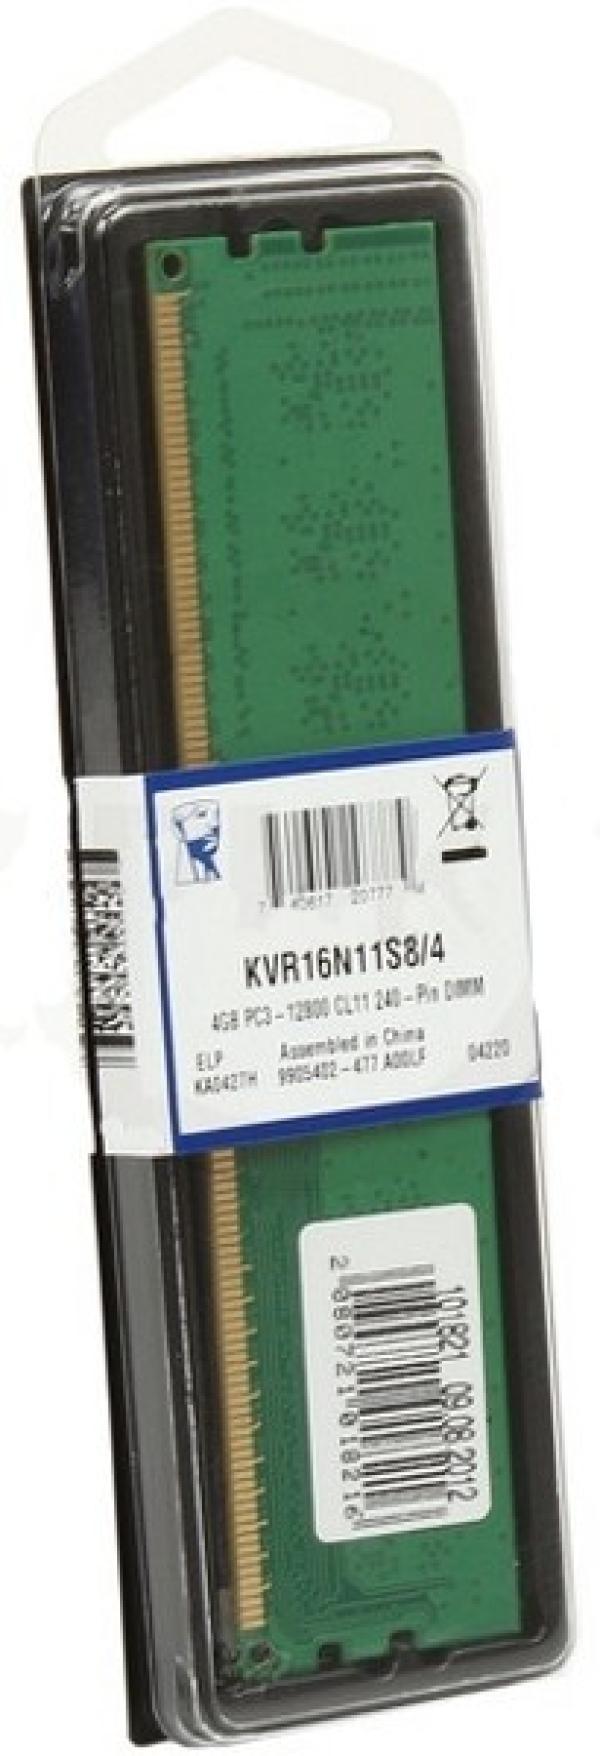 Оперативная память DIMM DDR3  4GB, 1600МГц (PC12800) Kingston KVR16N11S8/4, Retail